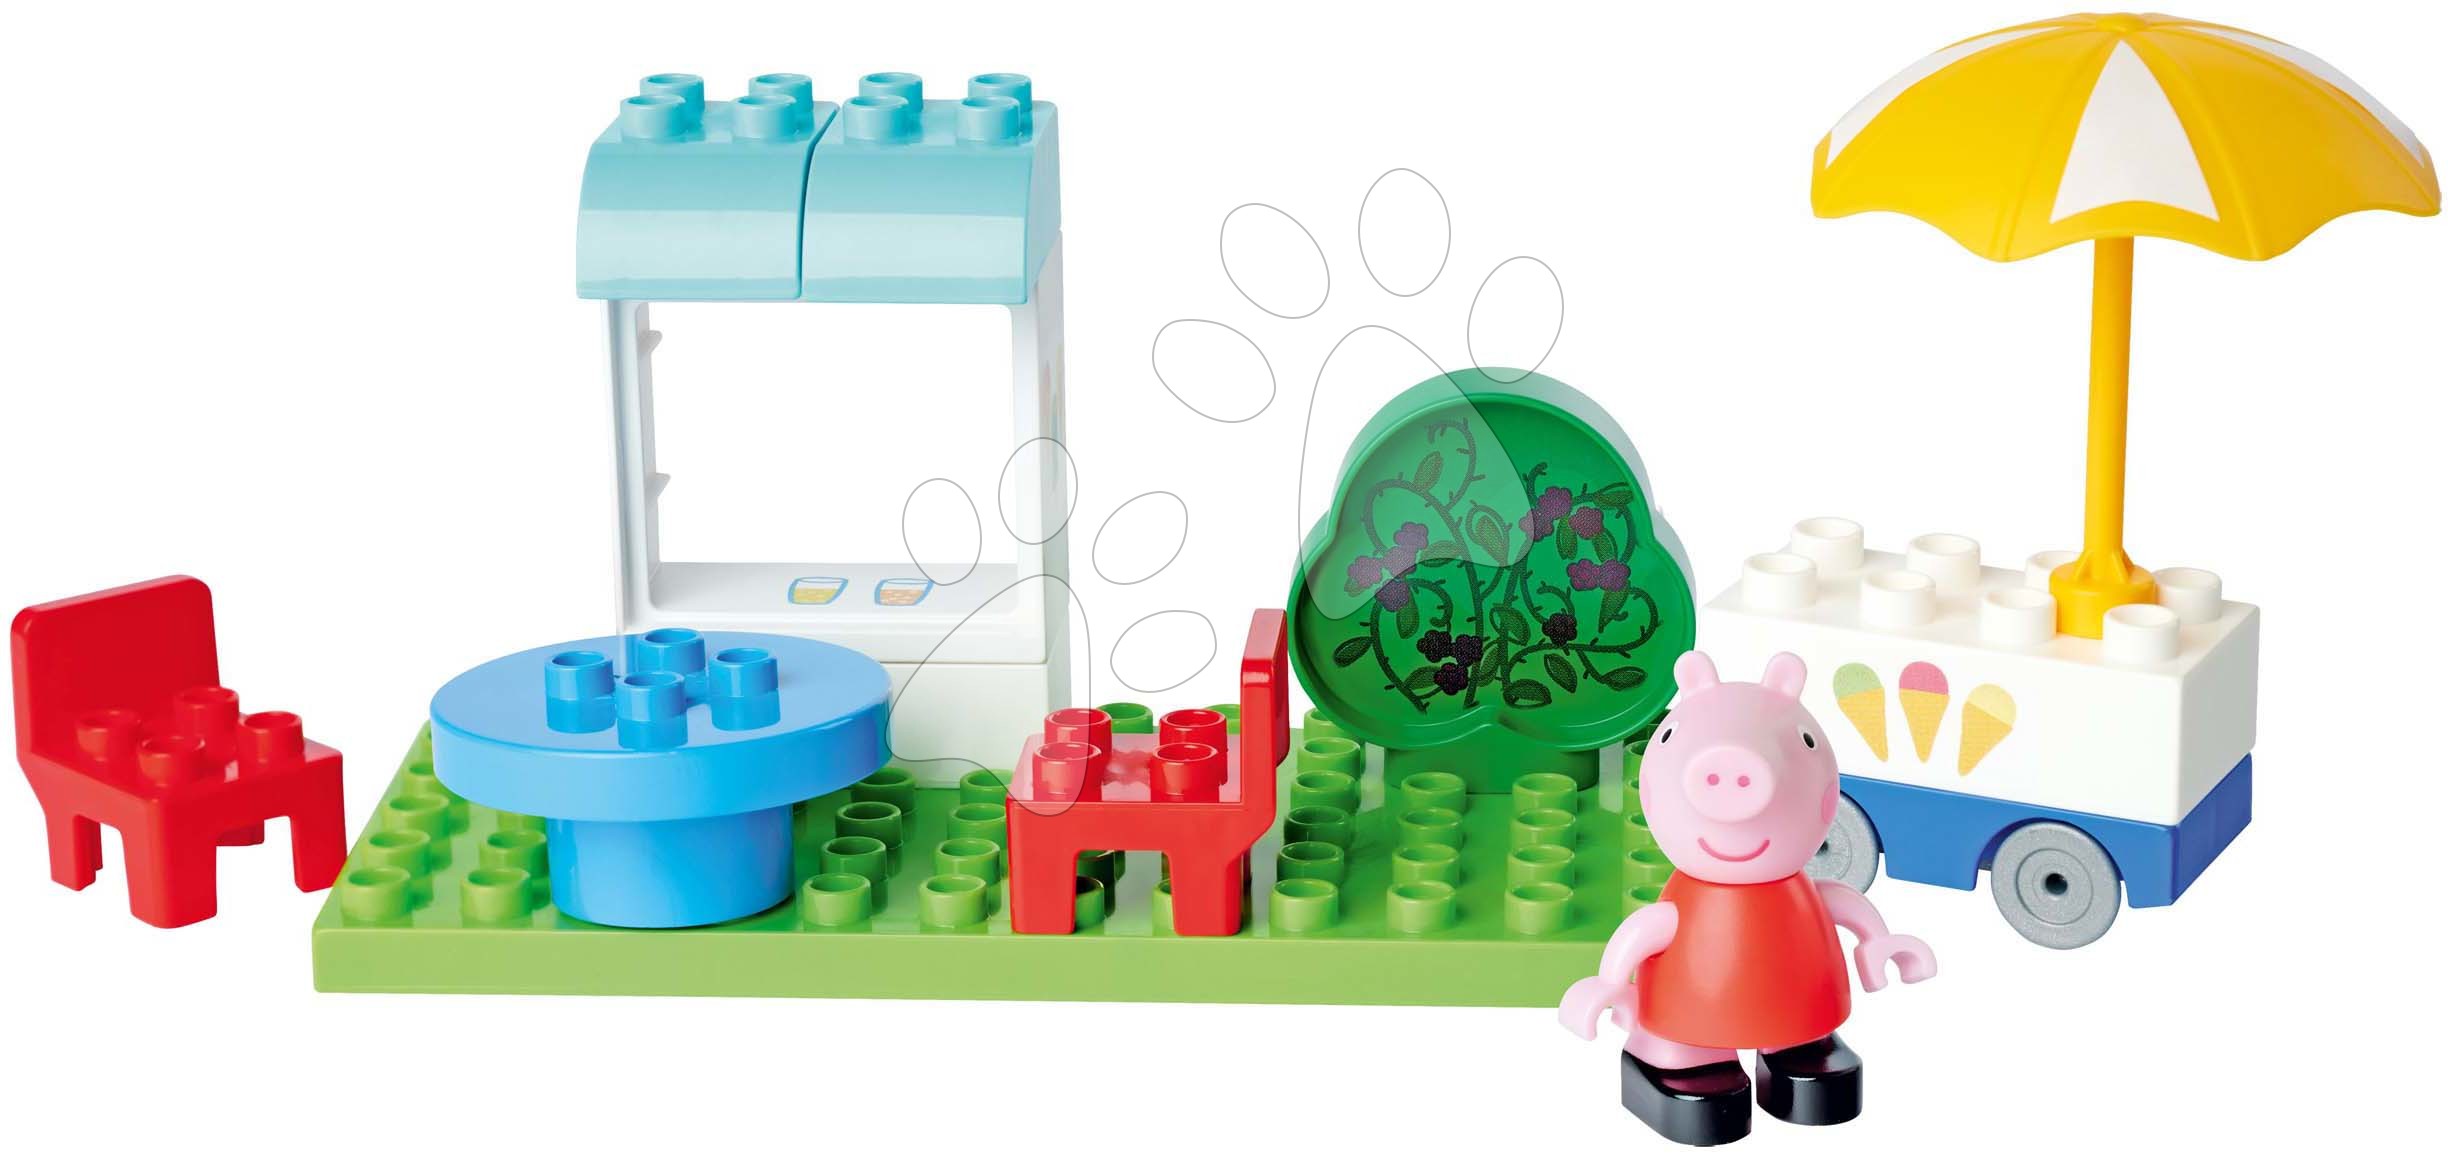 Stavebnica Peppa Pig Basic Set PlayBig Bloxx BIG s figúrkou v cukrárni od 1,5-5 rokov